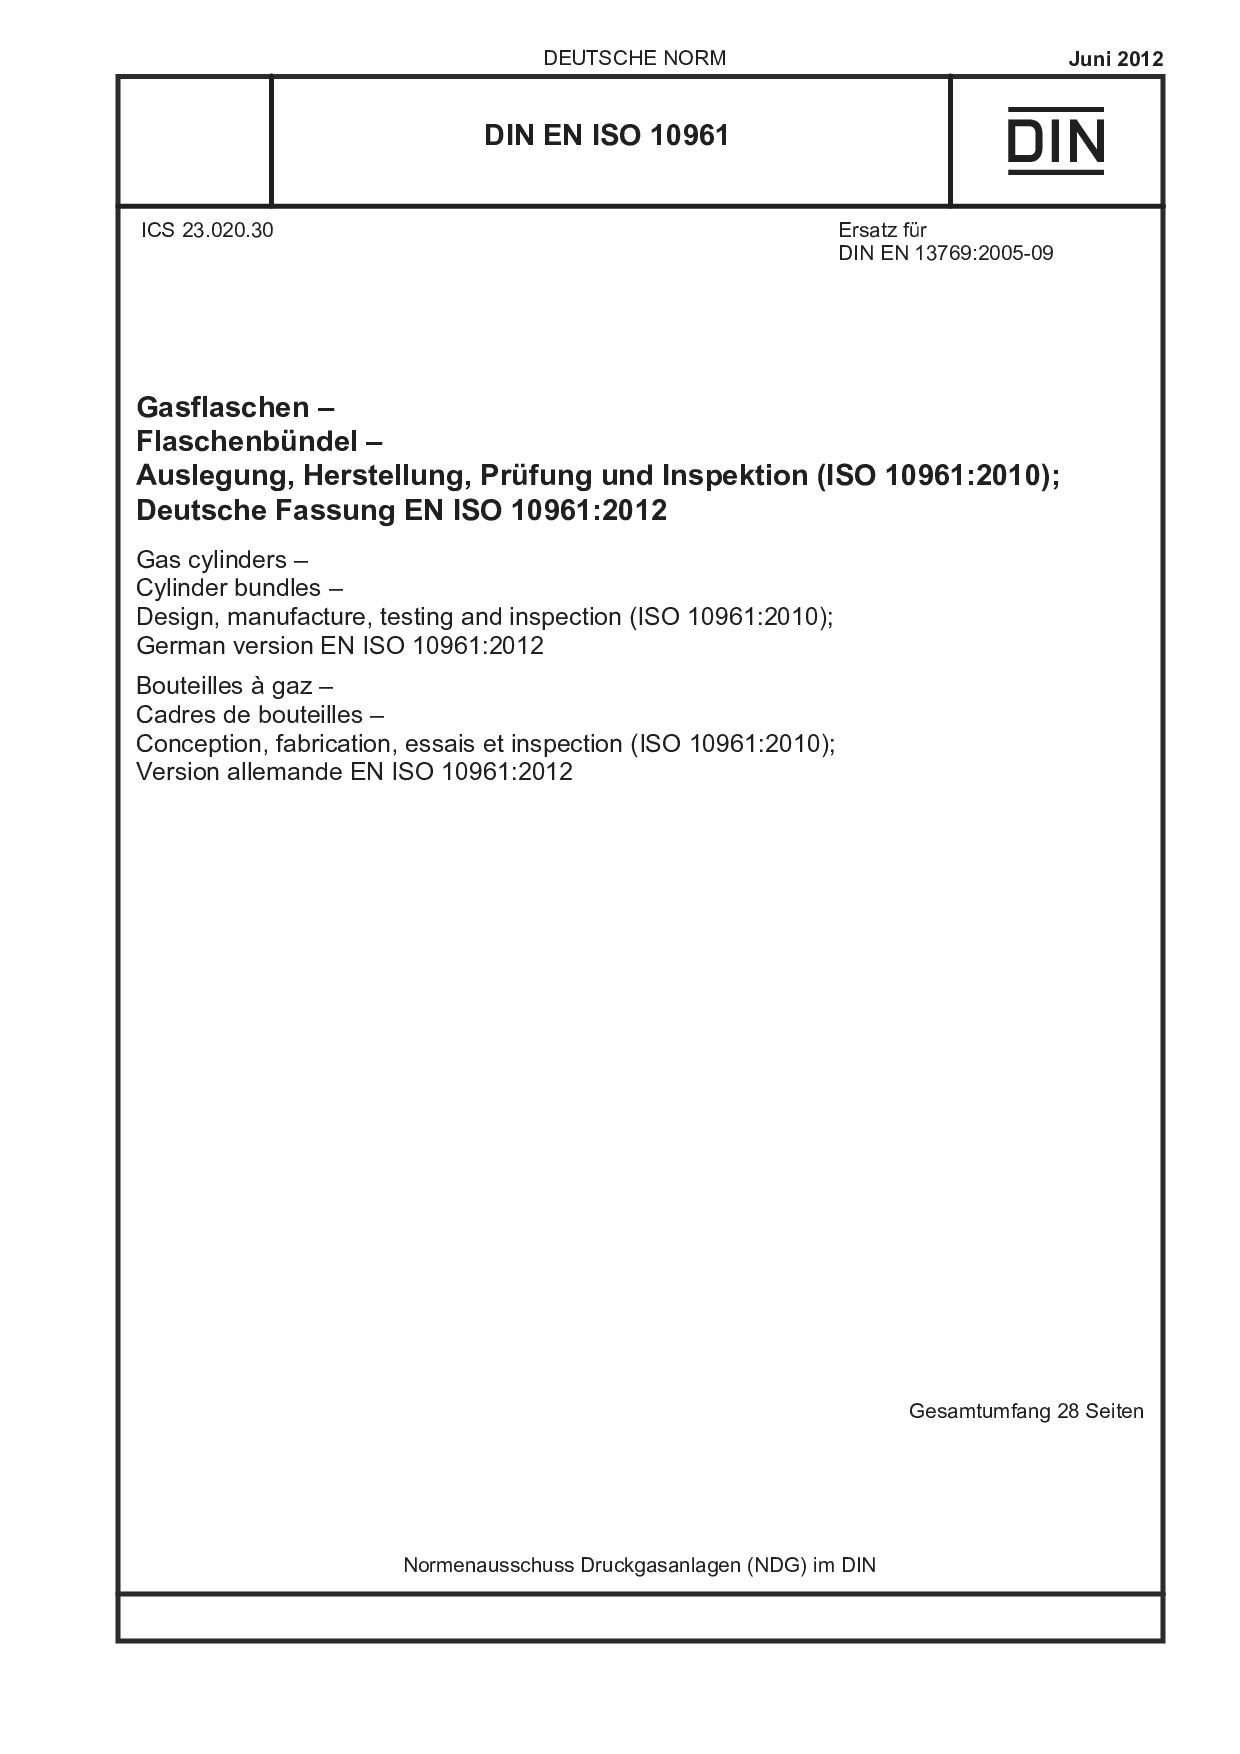 DIN EN ISO 10961:2012封面图